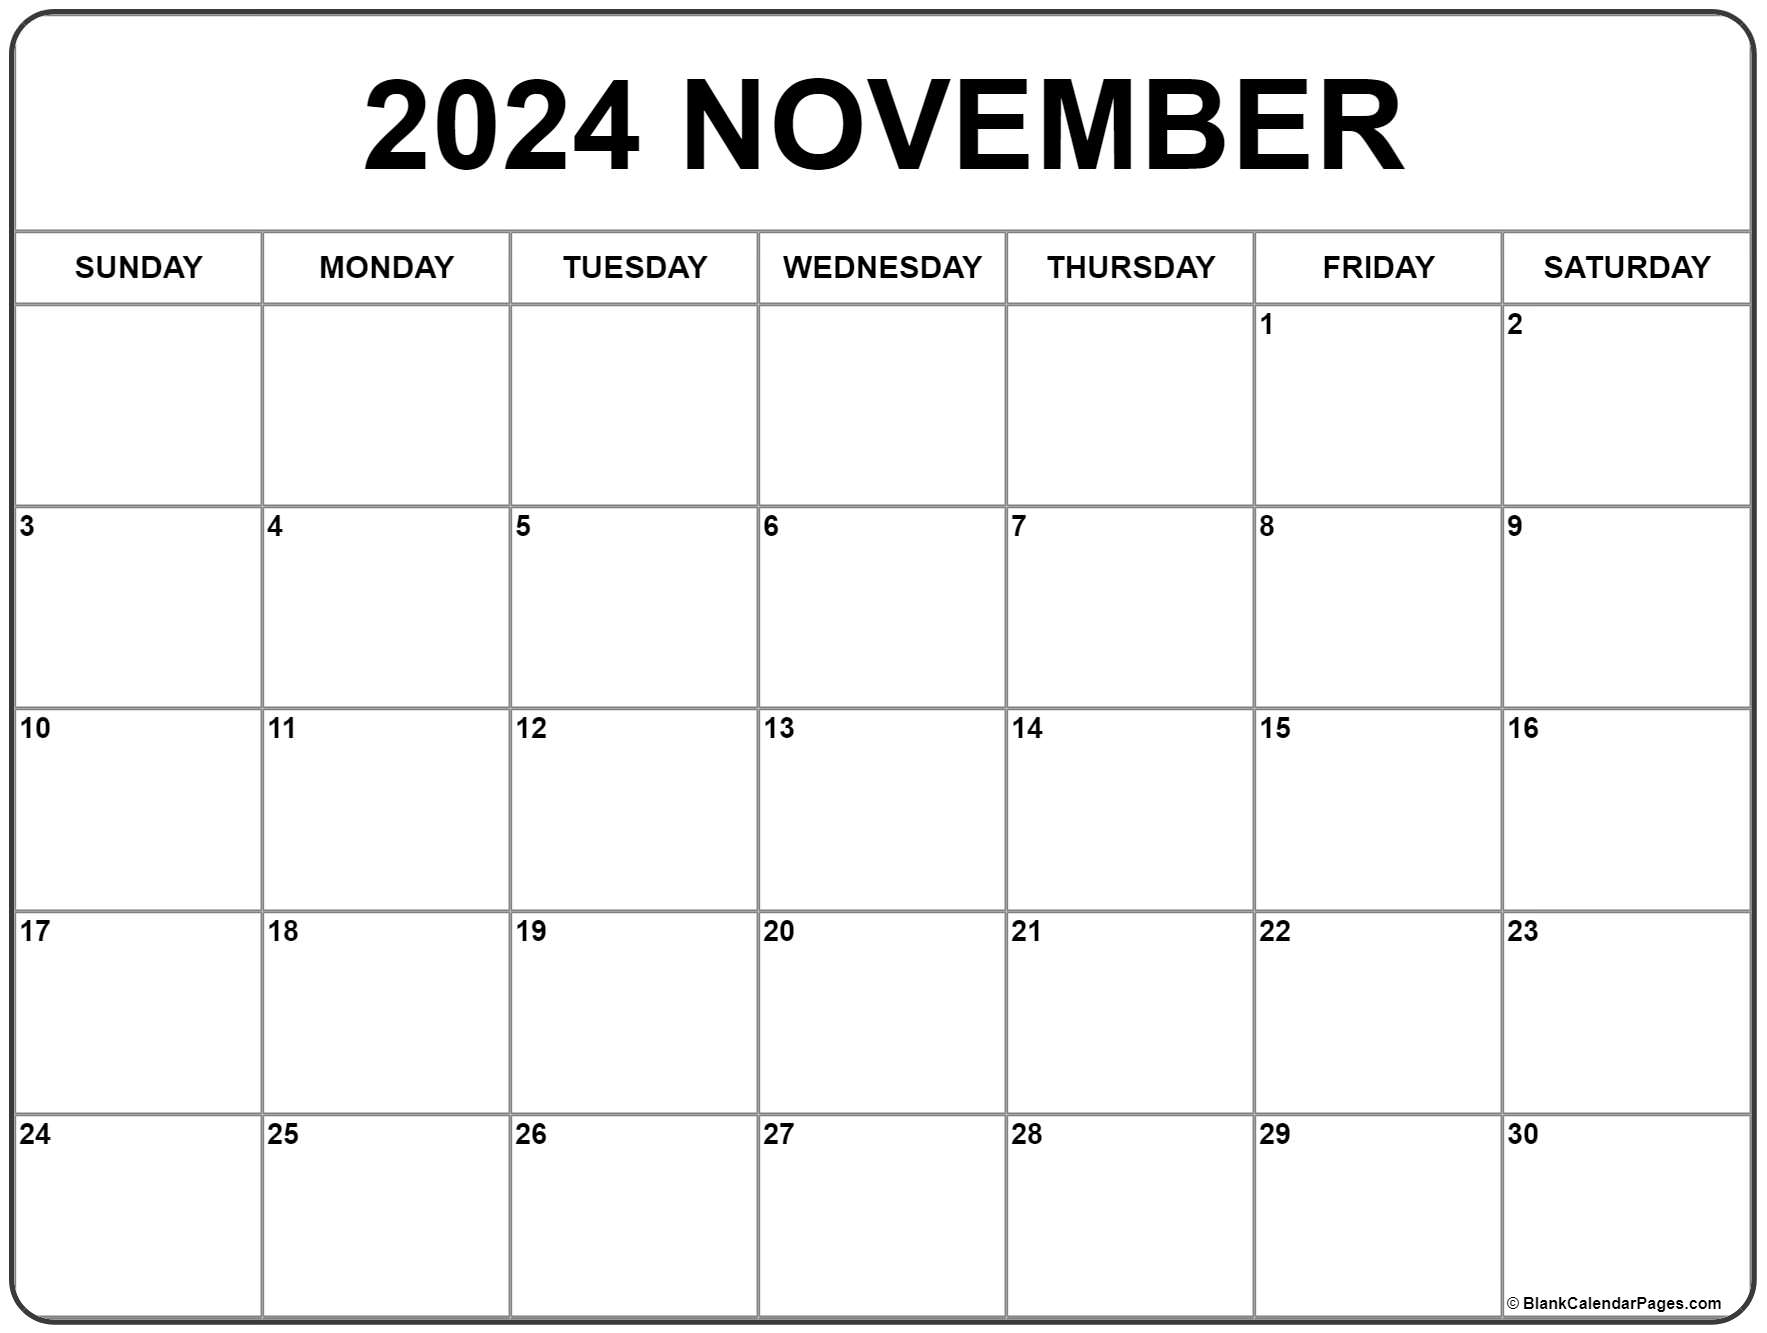 Недели июль 2022. Календарь сентябрь 2021. Календарь июль 2022. Февраль 2022. Календарь июнь 2022.